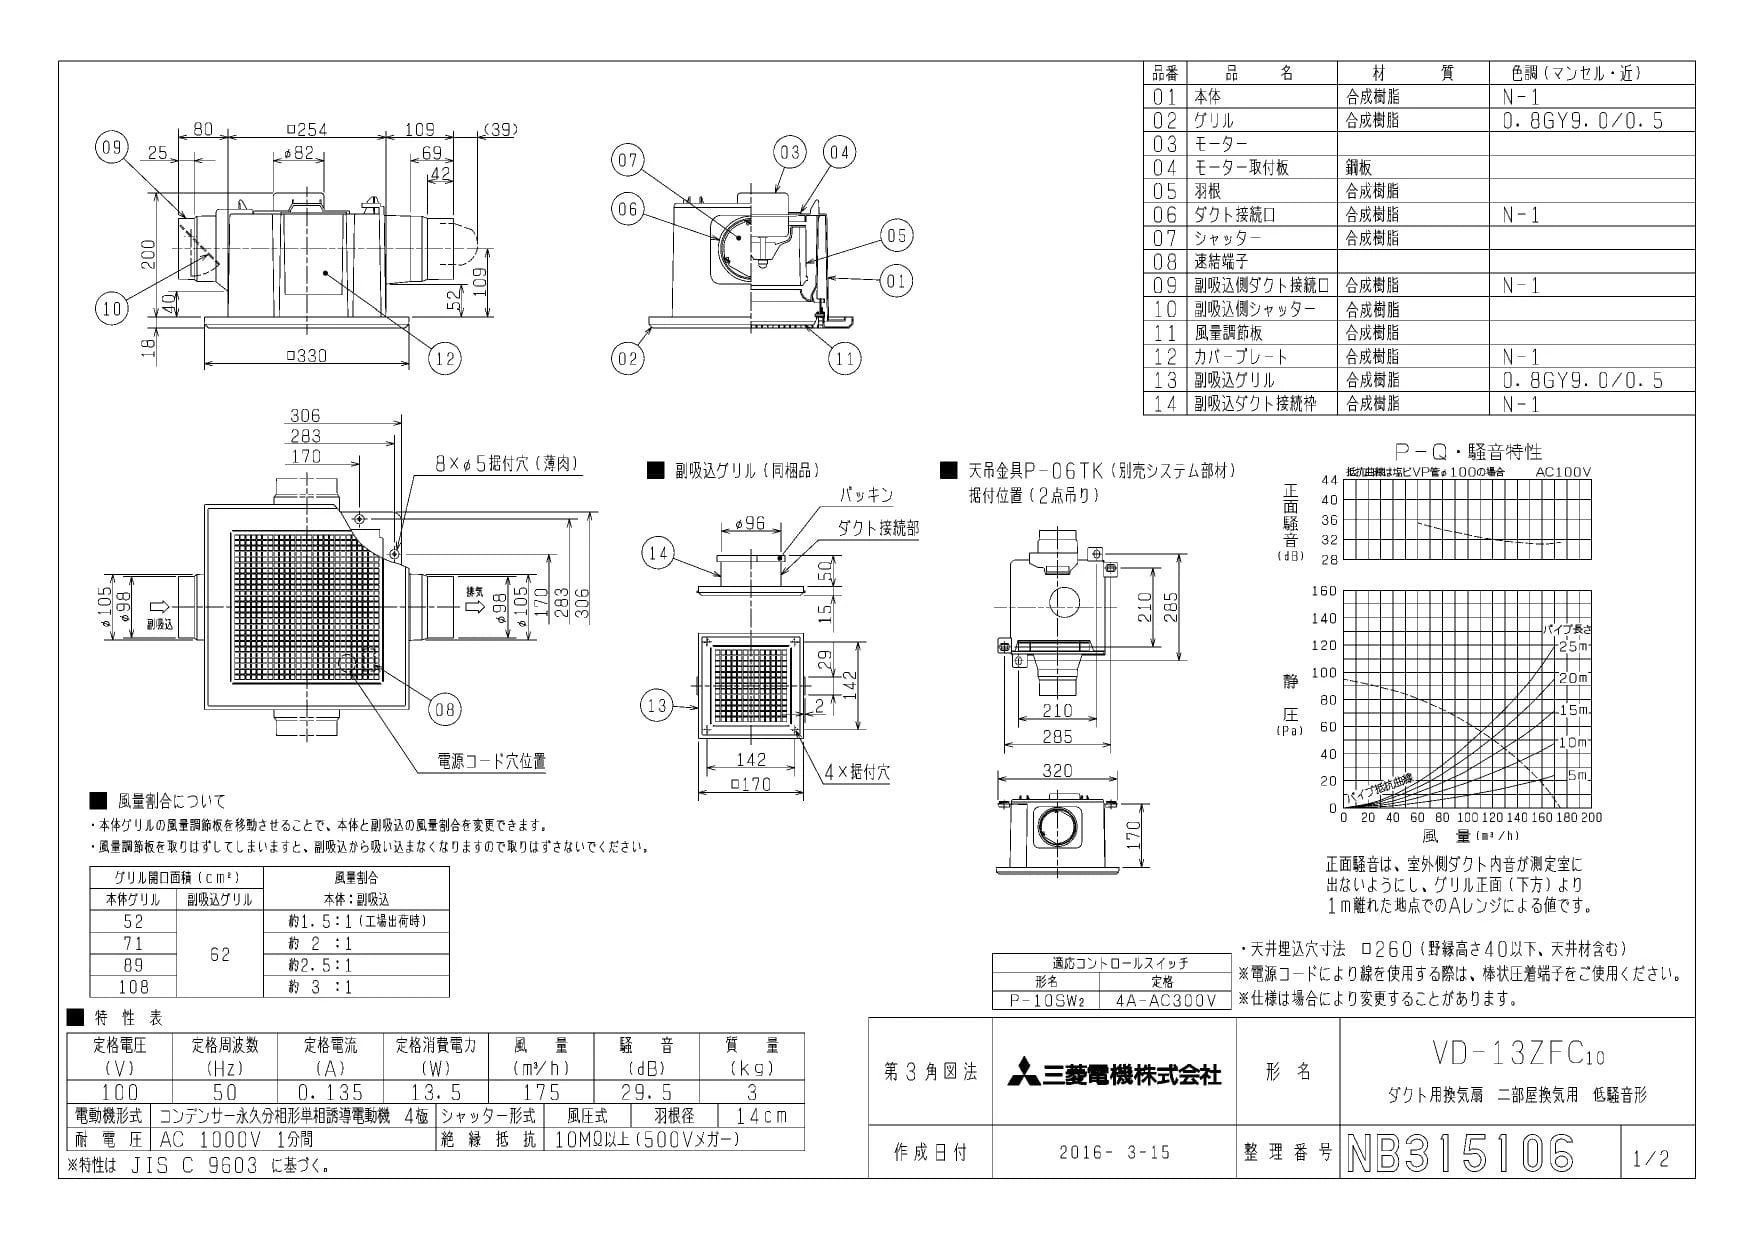 三菱電機 VD-13ZFC10商品図面 | 通販 プロストア ダイレクト